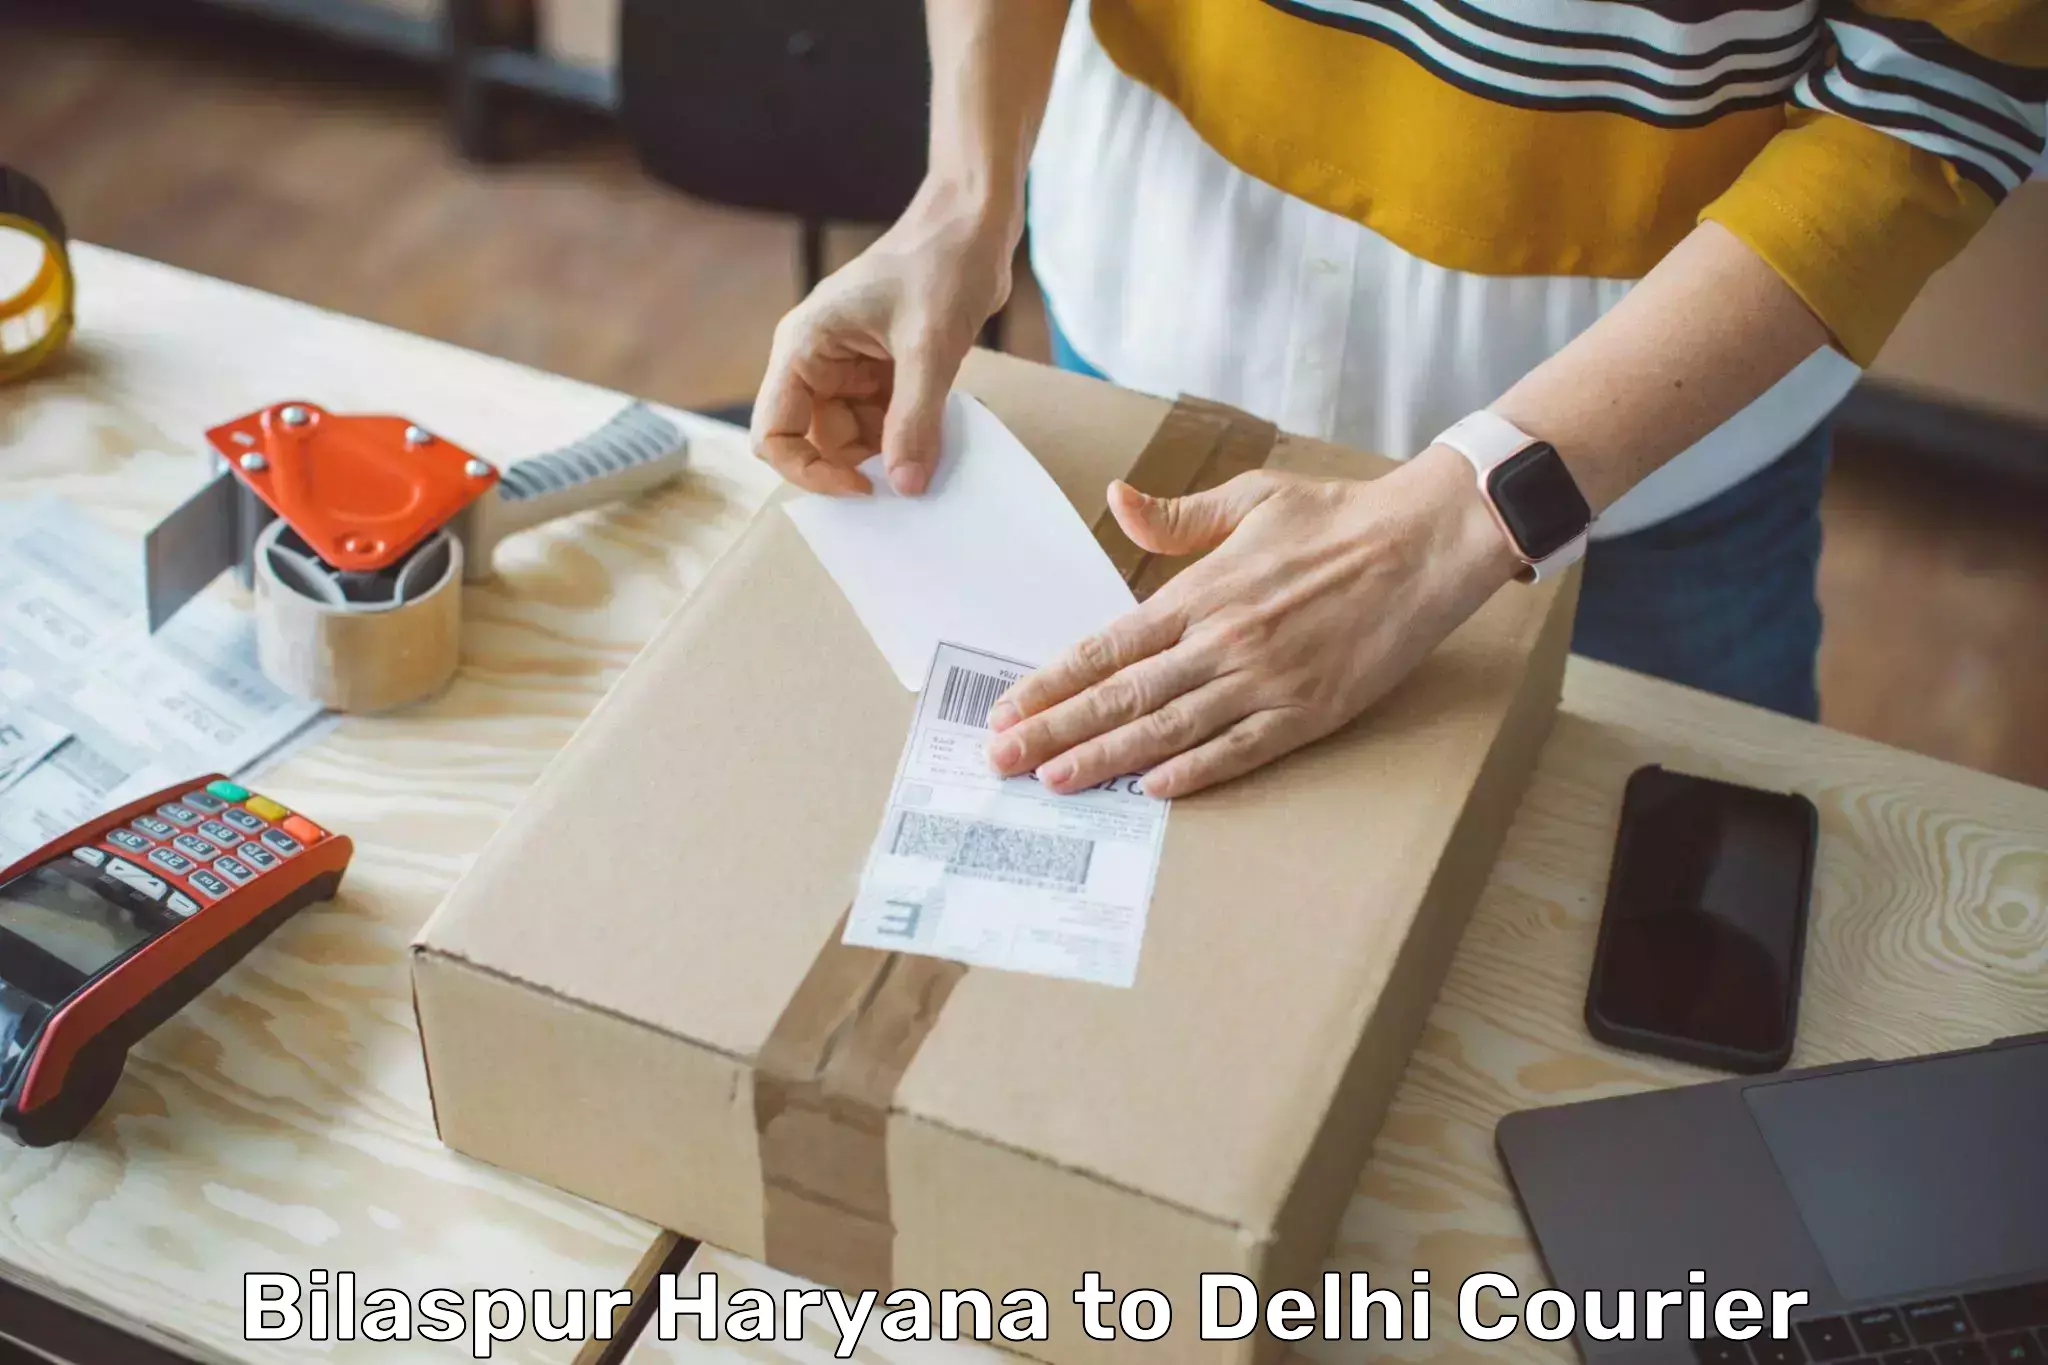 Speedy delivery service Bilaspur Haryana to Delhi